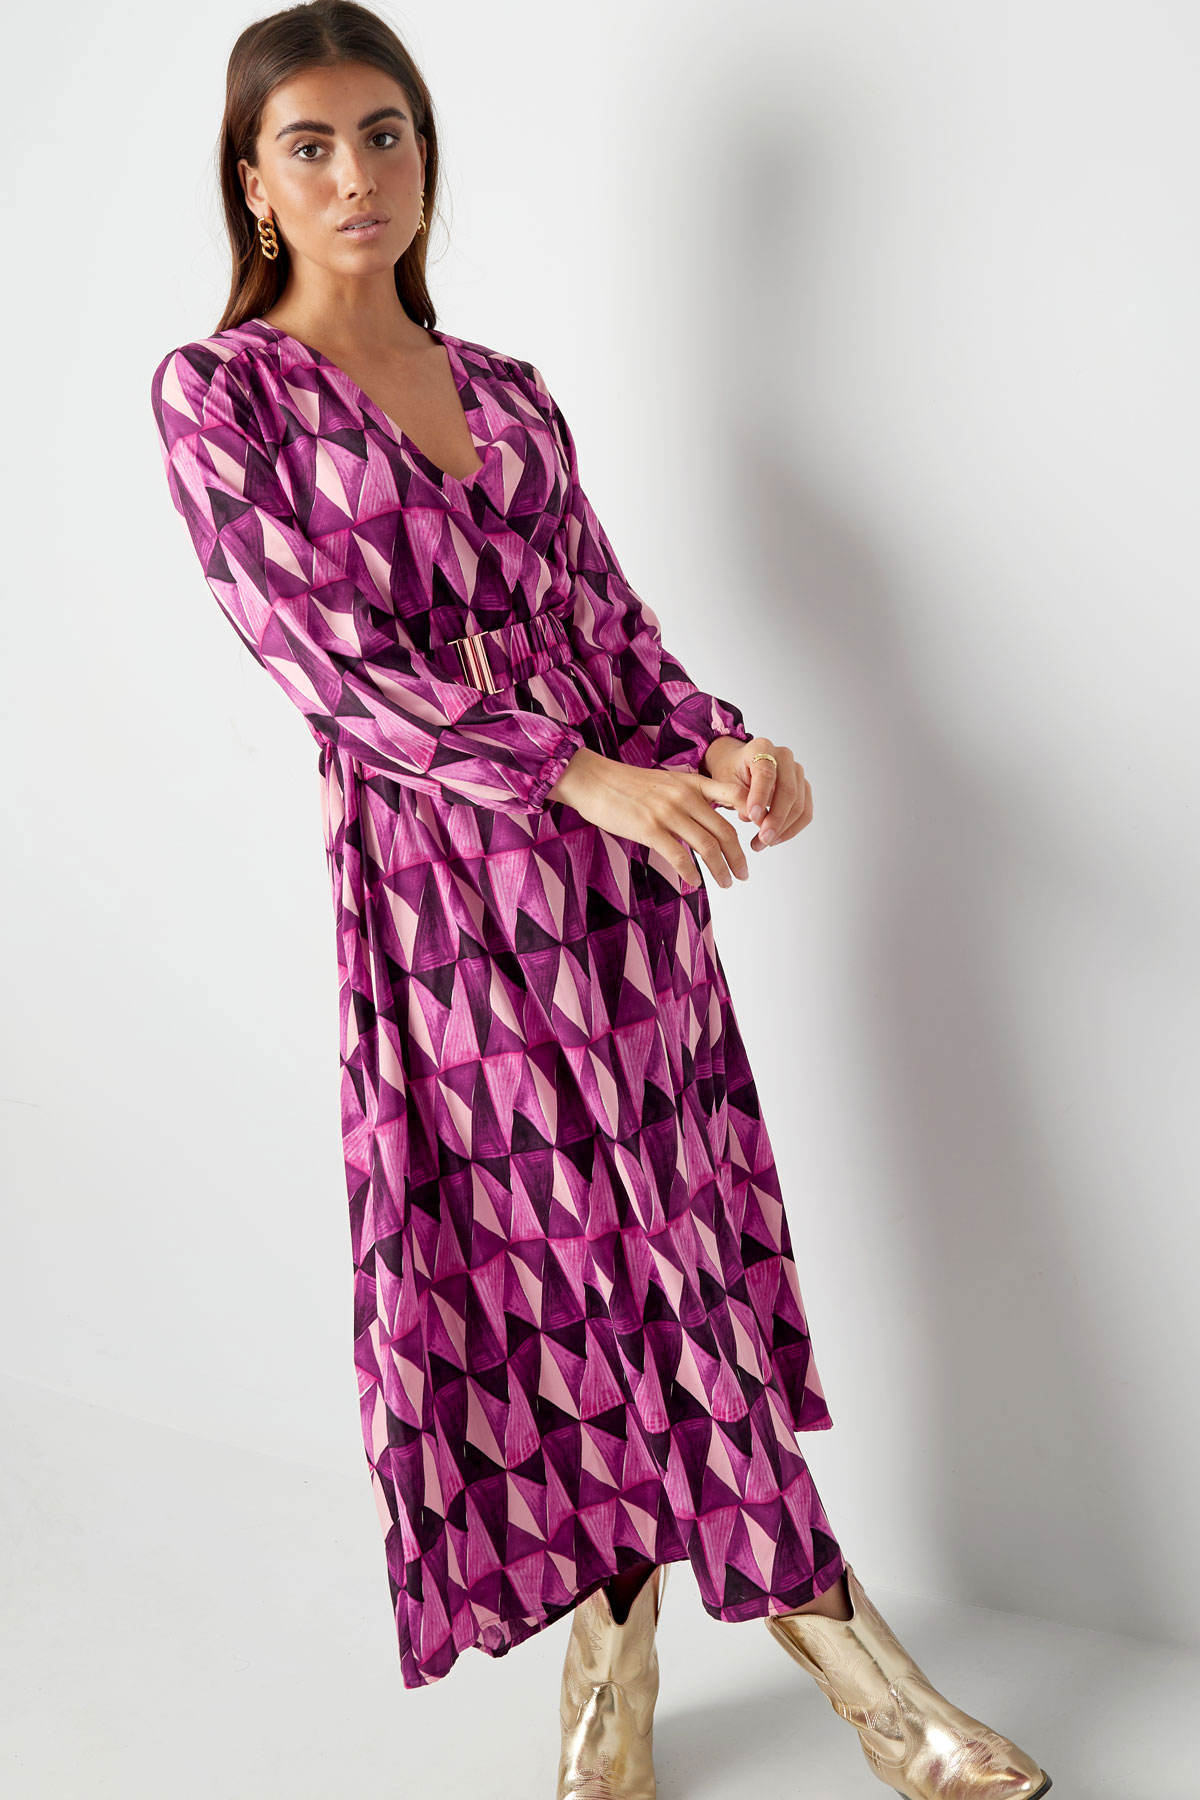 Robe longue imprimé rétro violet rose Image5